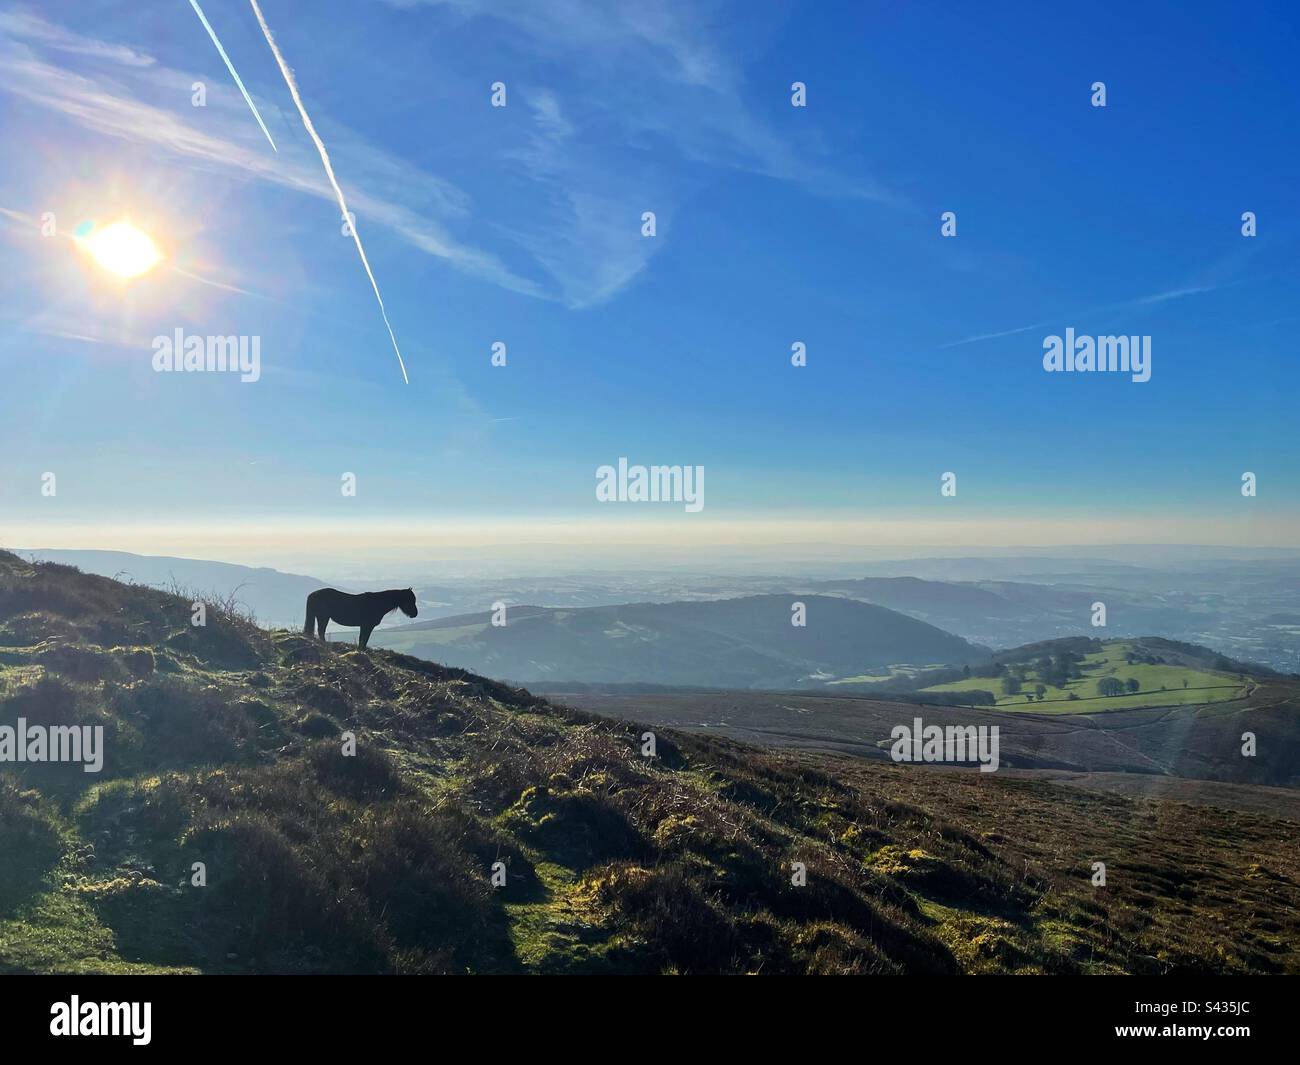 Wildes Pony auf dem Zuckerhut, Abergavenny, Wales, am frühen Morgen, April. Stockfoto